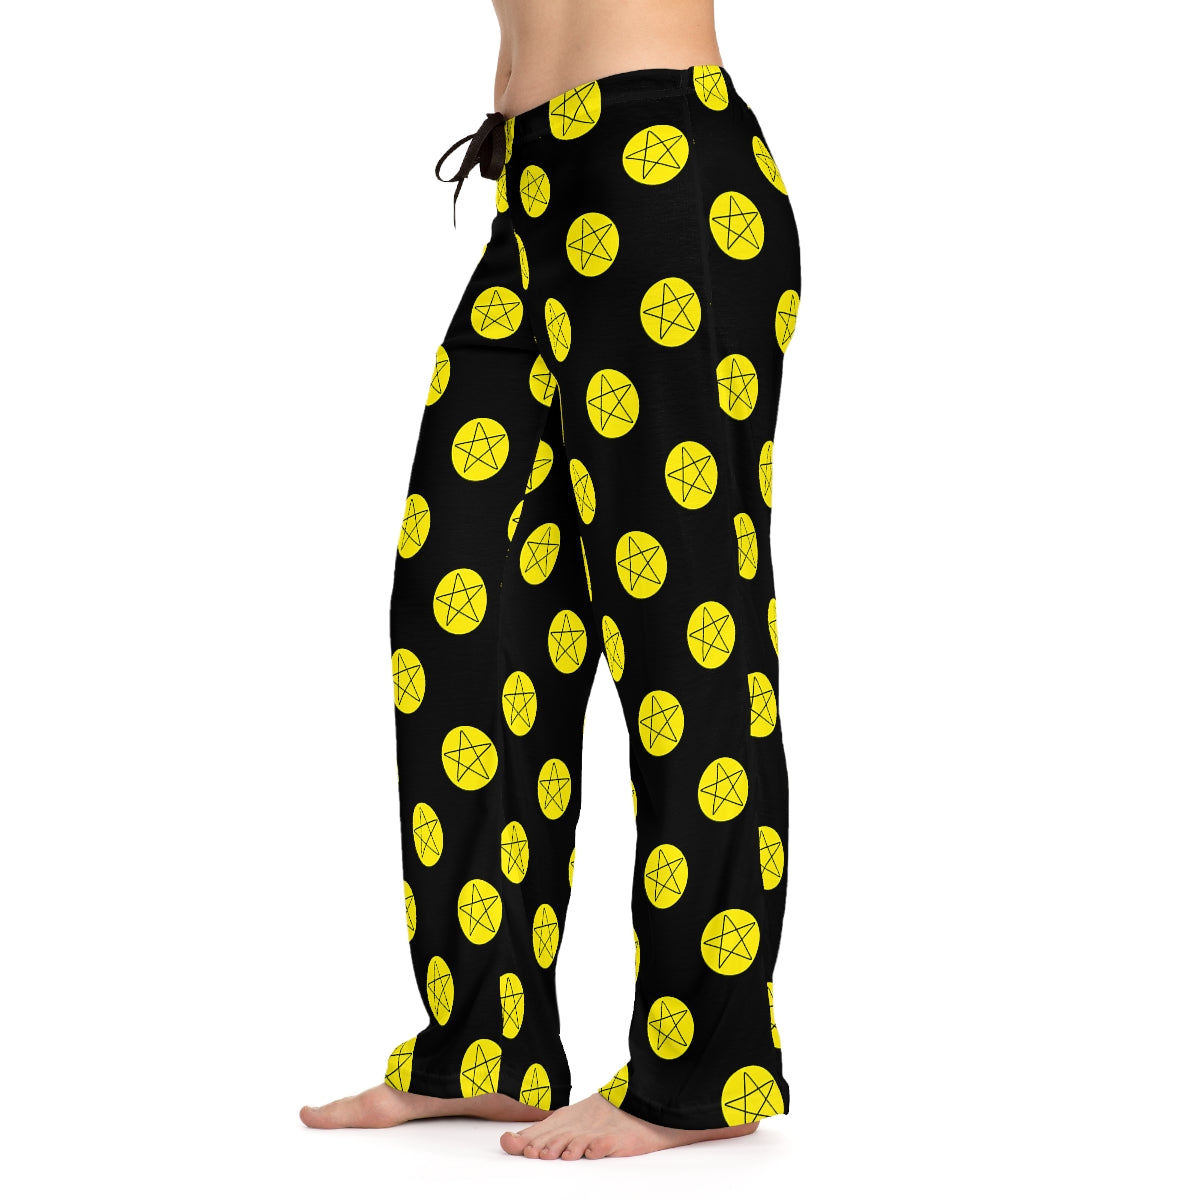 Tarot Pajama Pants - Suit of Pentacles